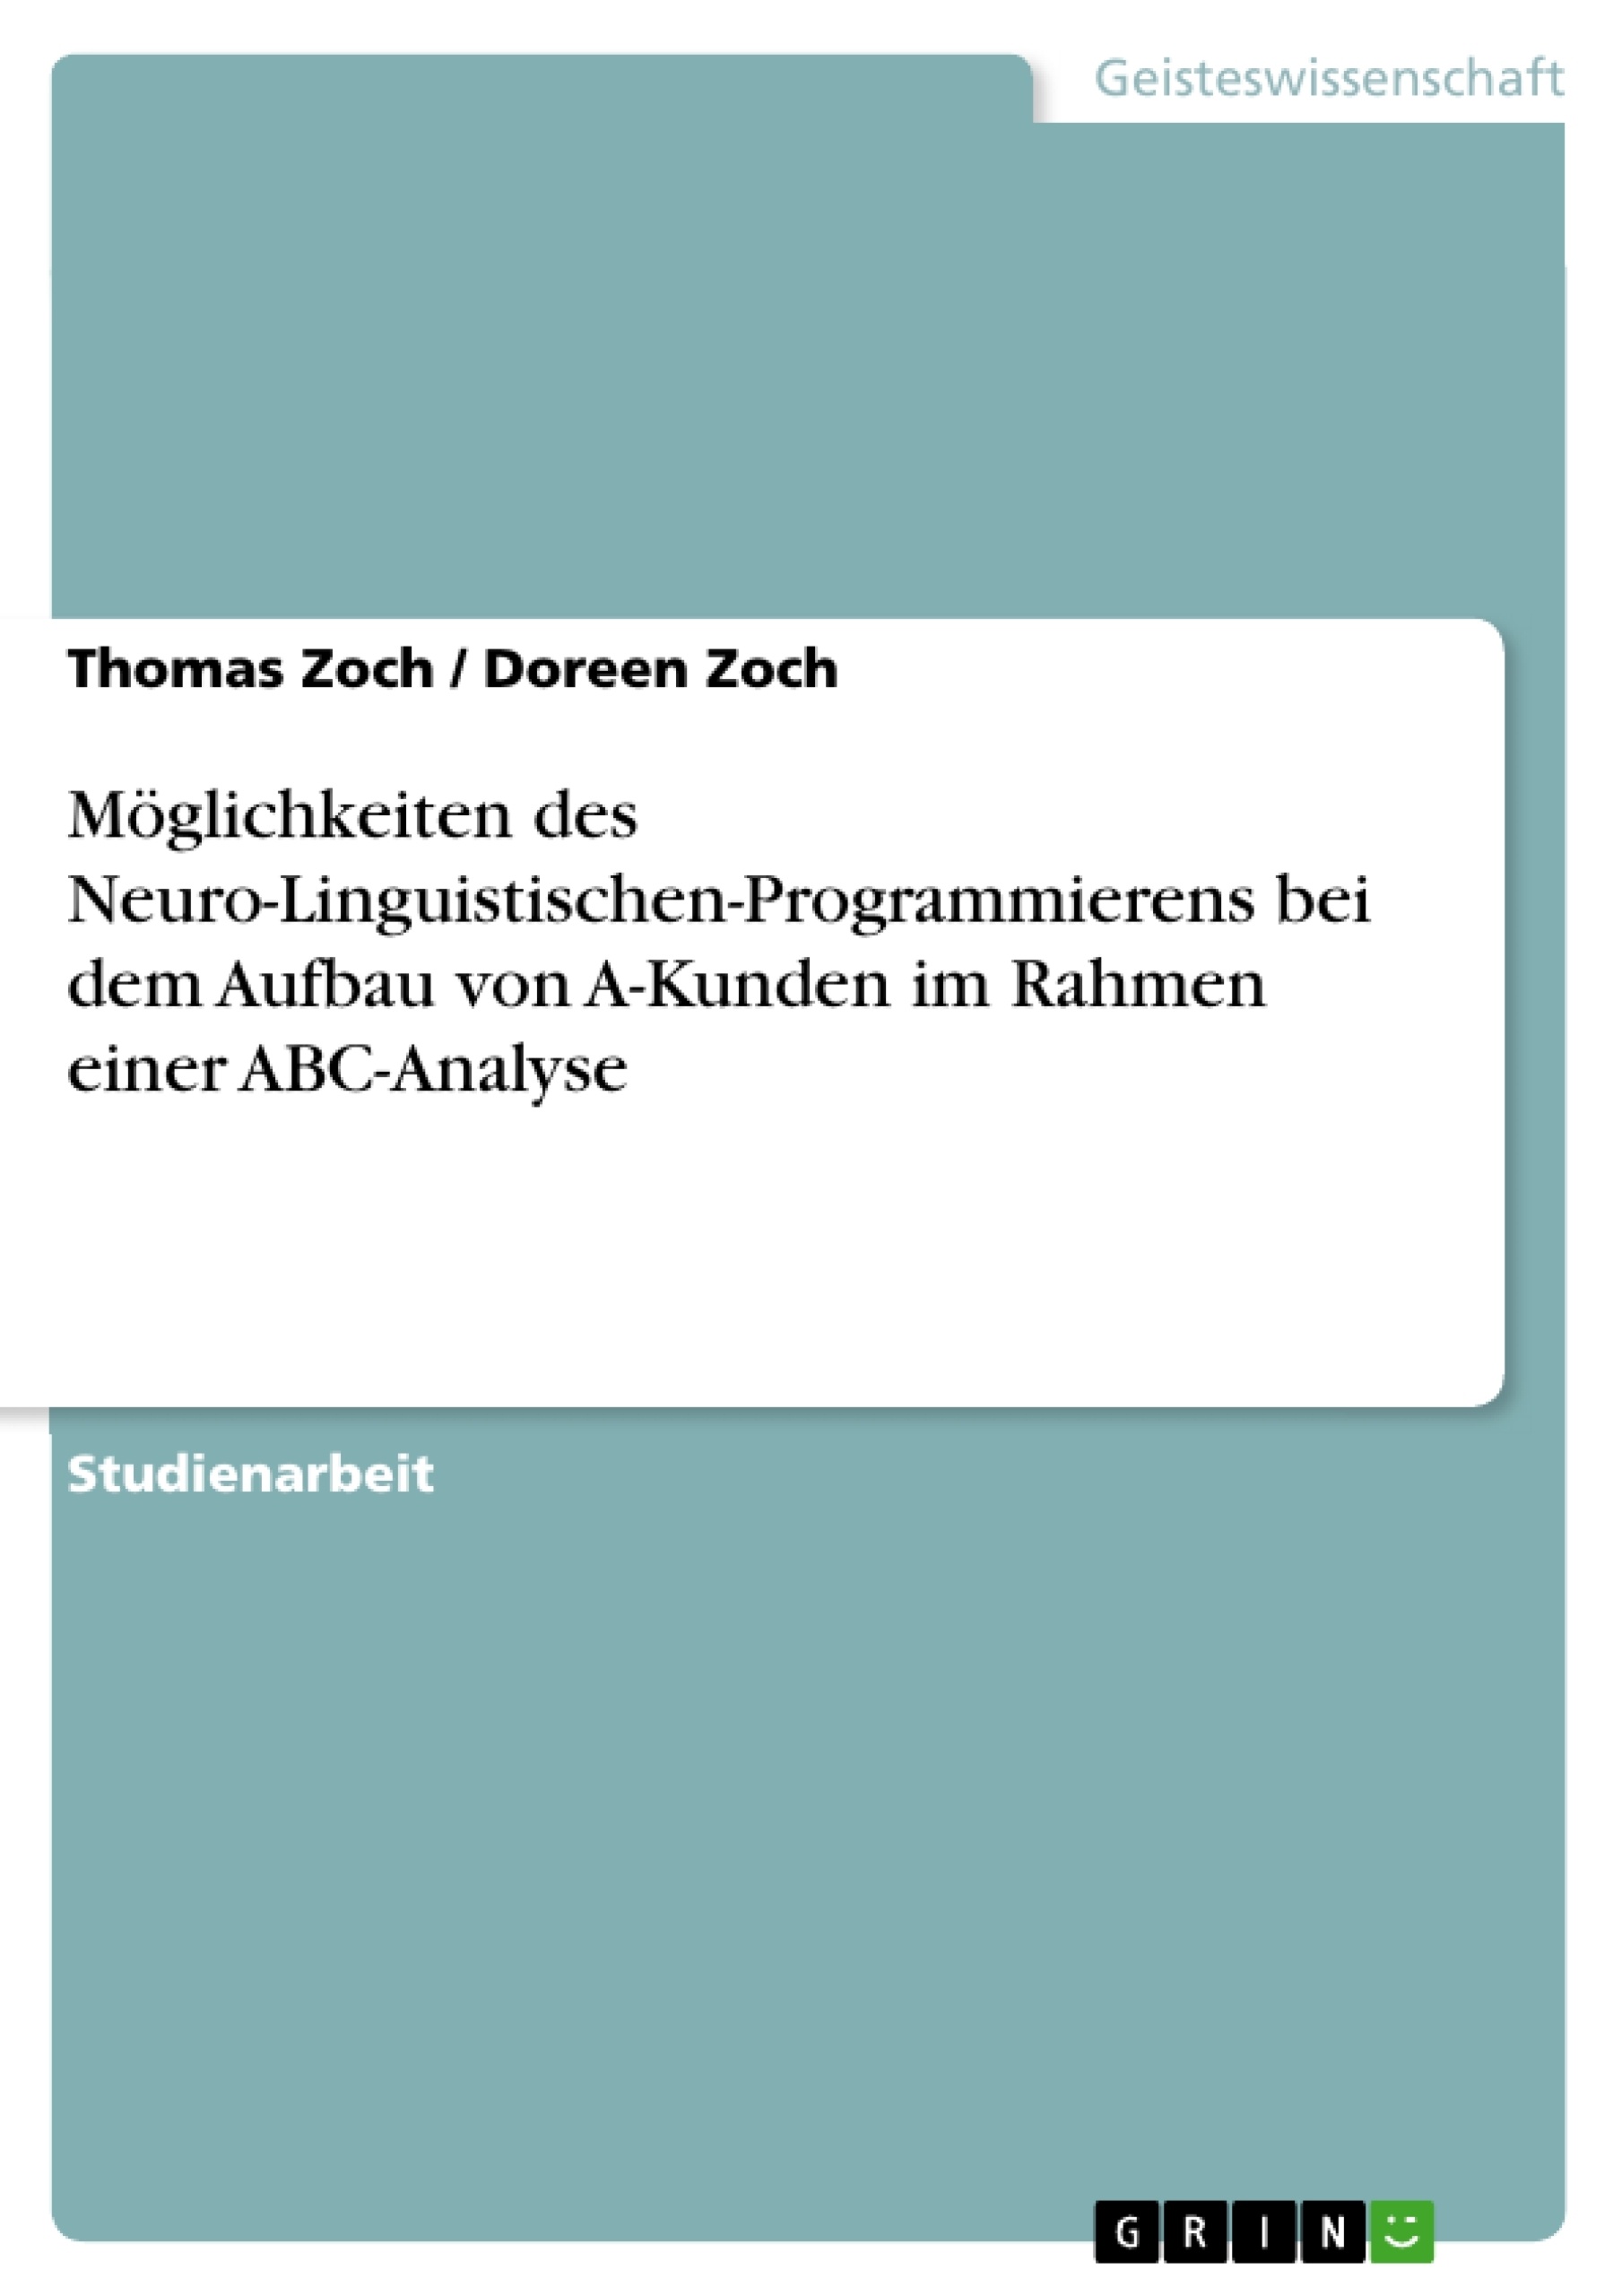 Título: Möglichkeiten des Neuro-Linguistischen-Programmierens bei dem Aufbau von A-Kunden im Rahmen einer ABC-Analyse